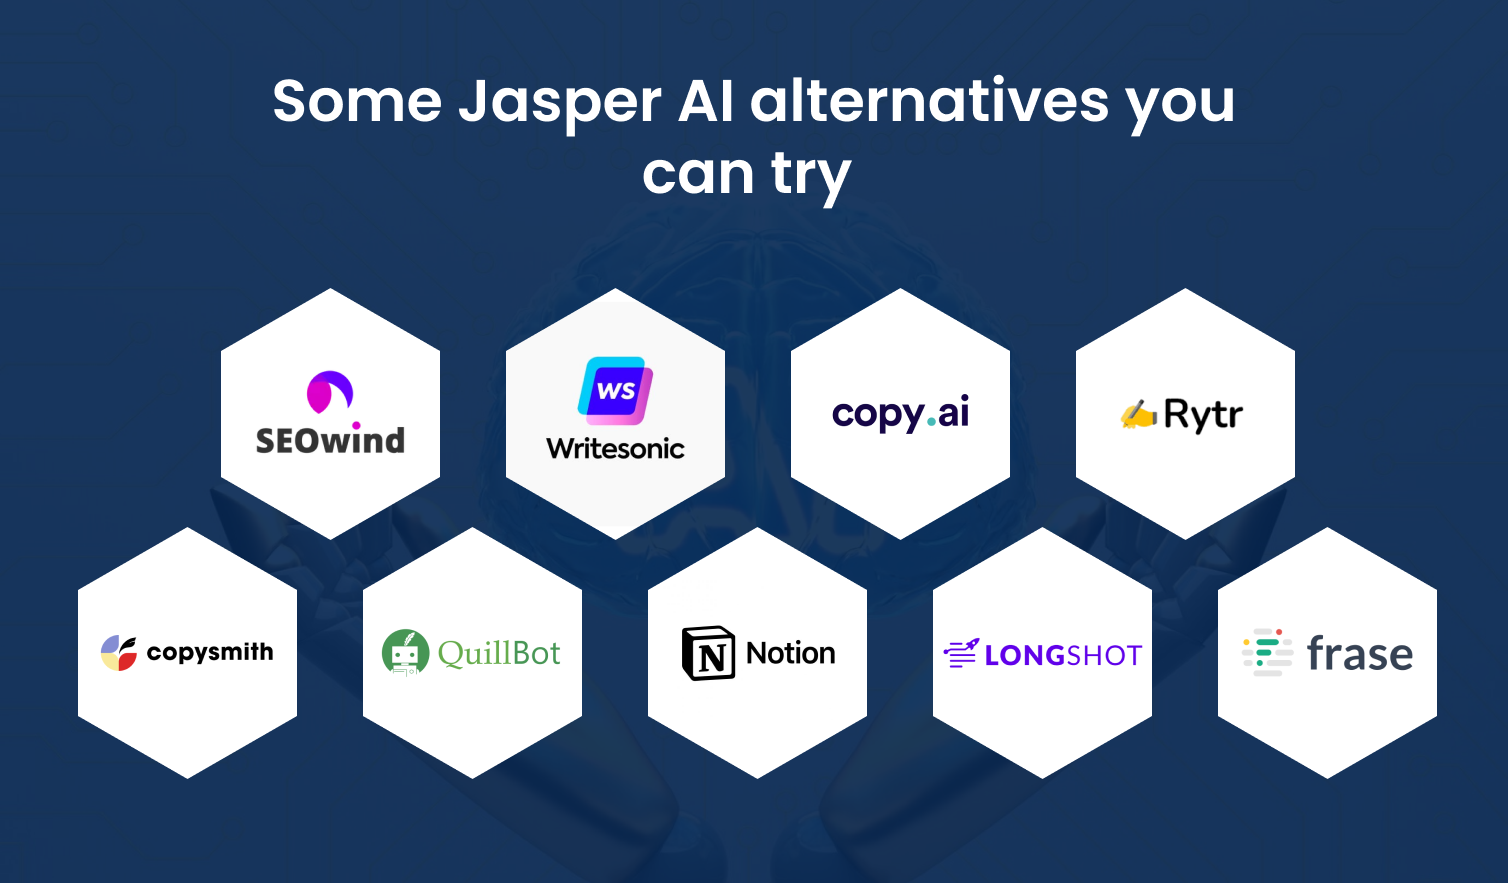 Jasper AI Alternatives